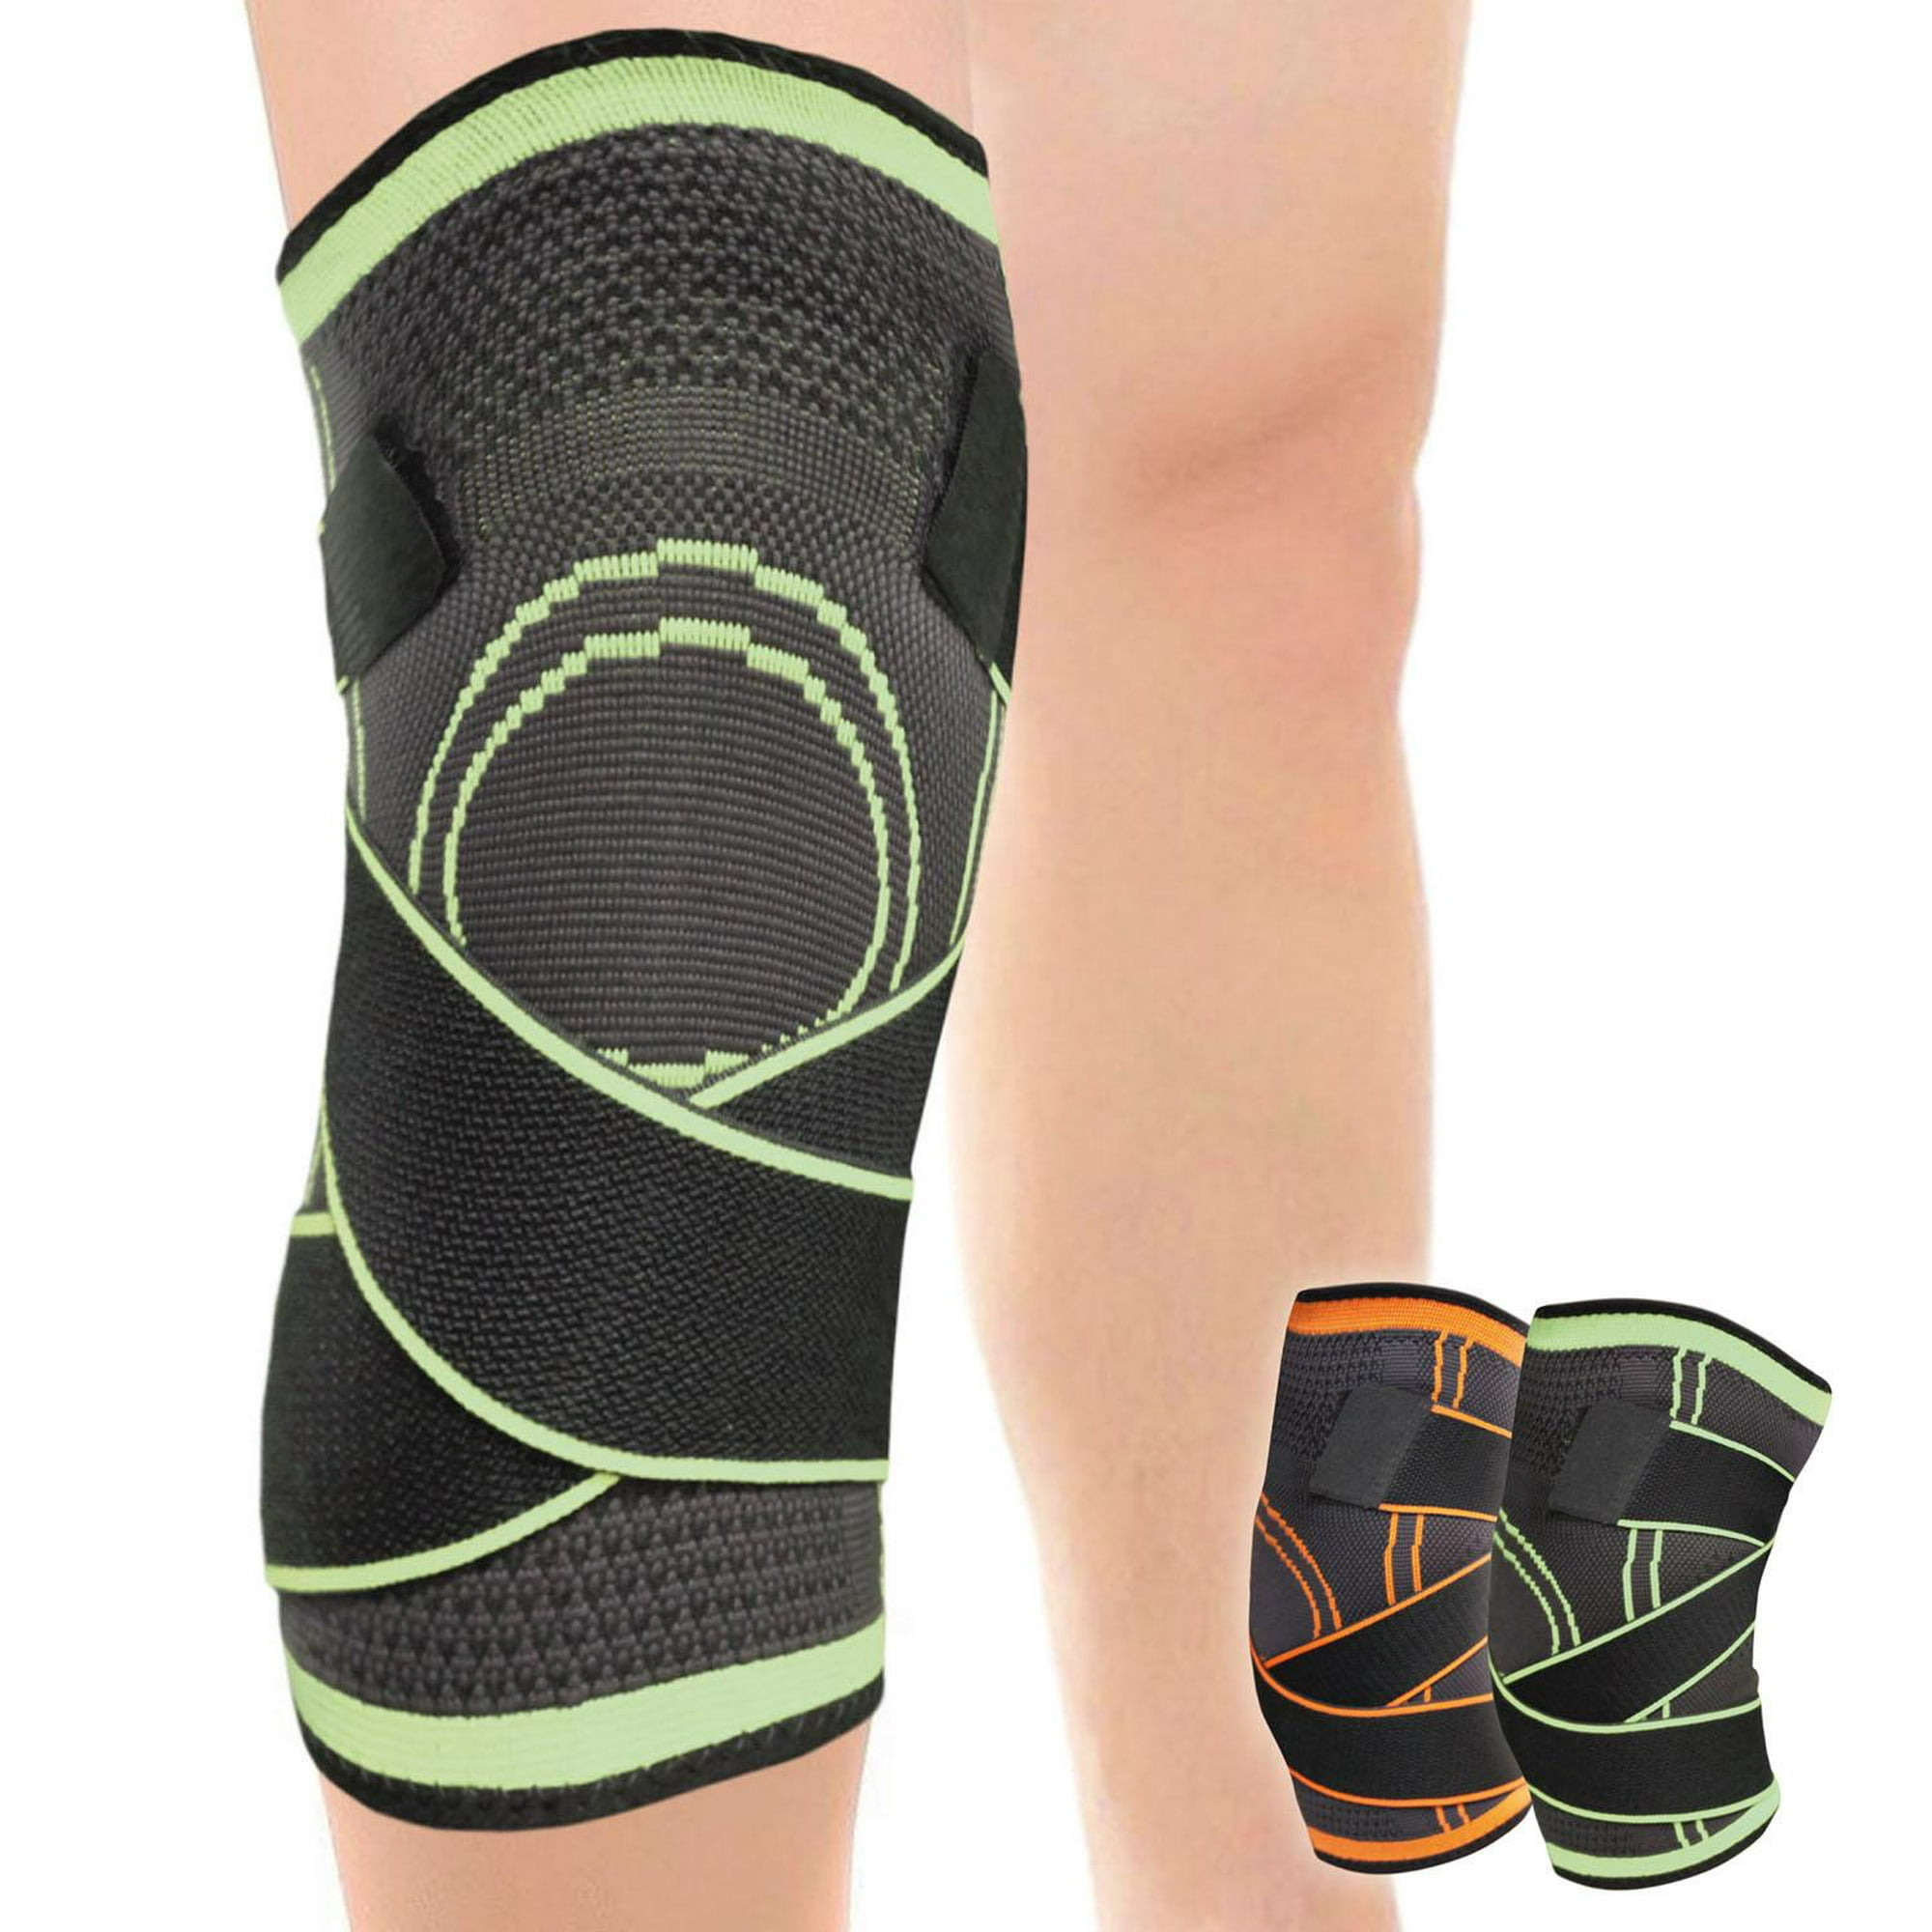 Rodillera CrossFit para proteger menisco y ligamentos